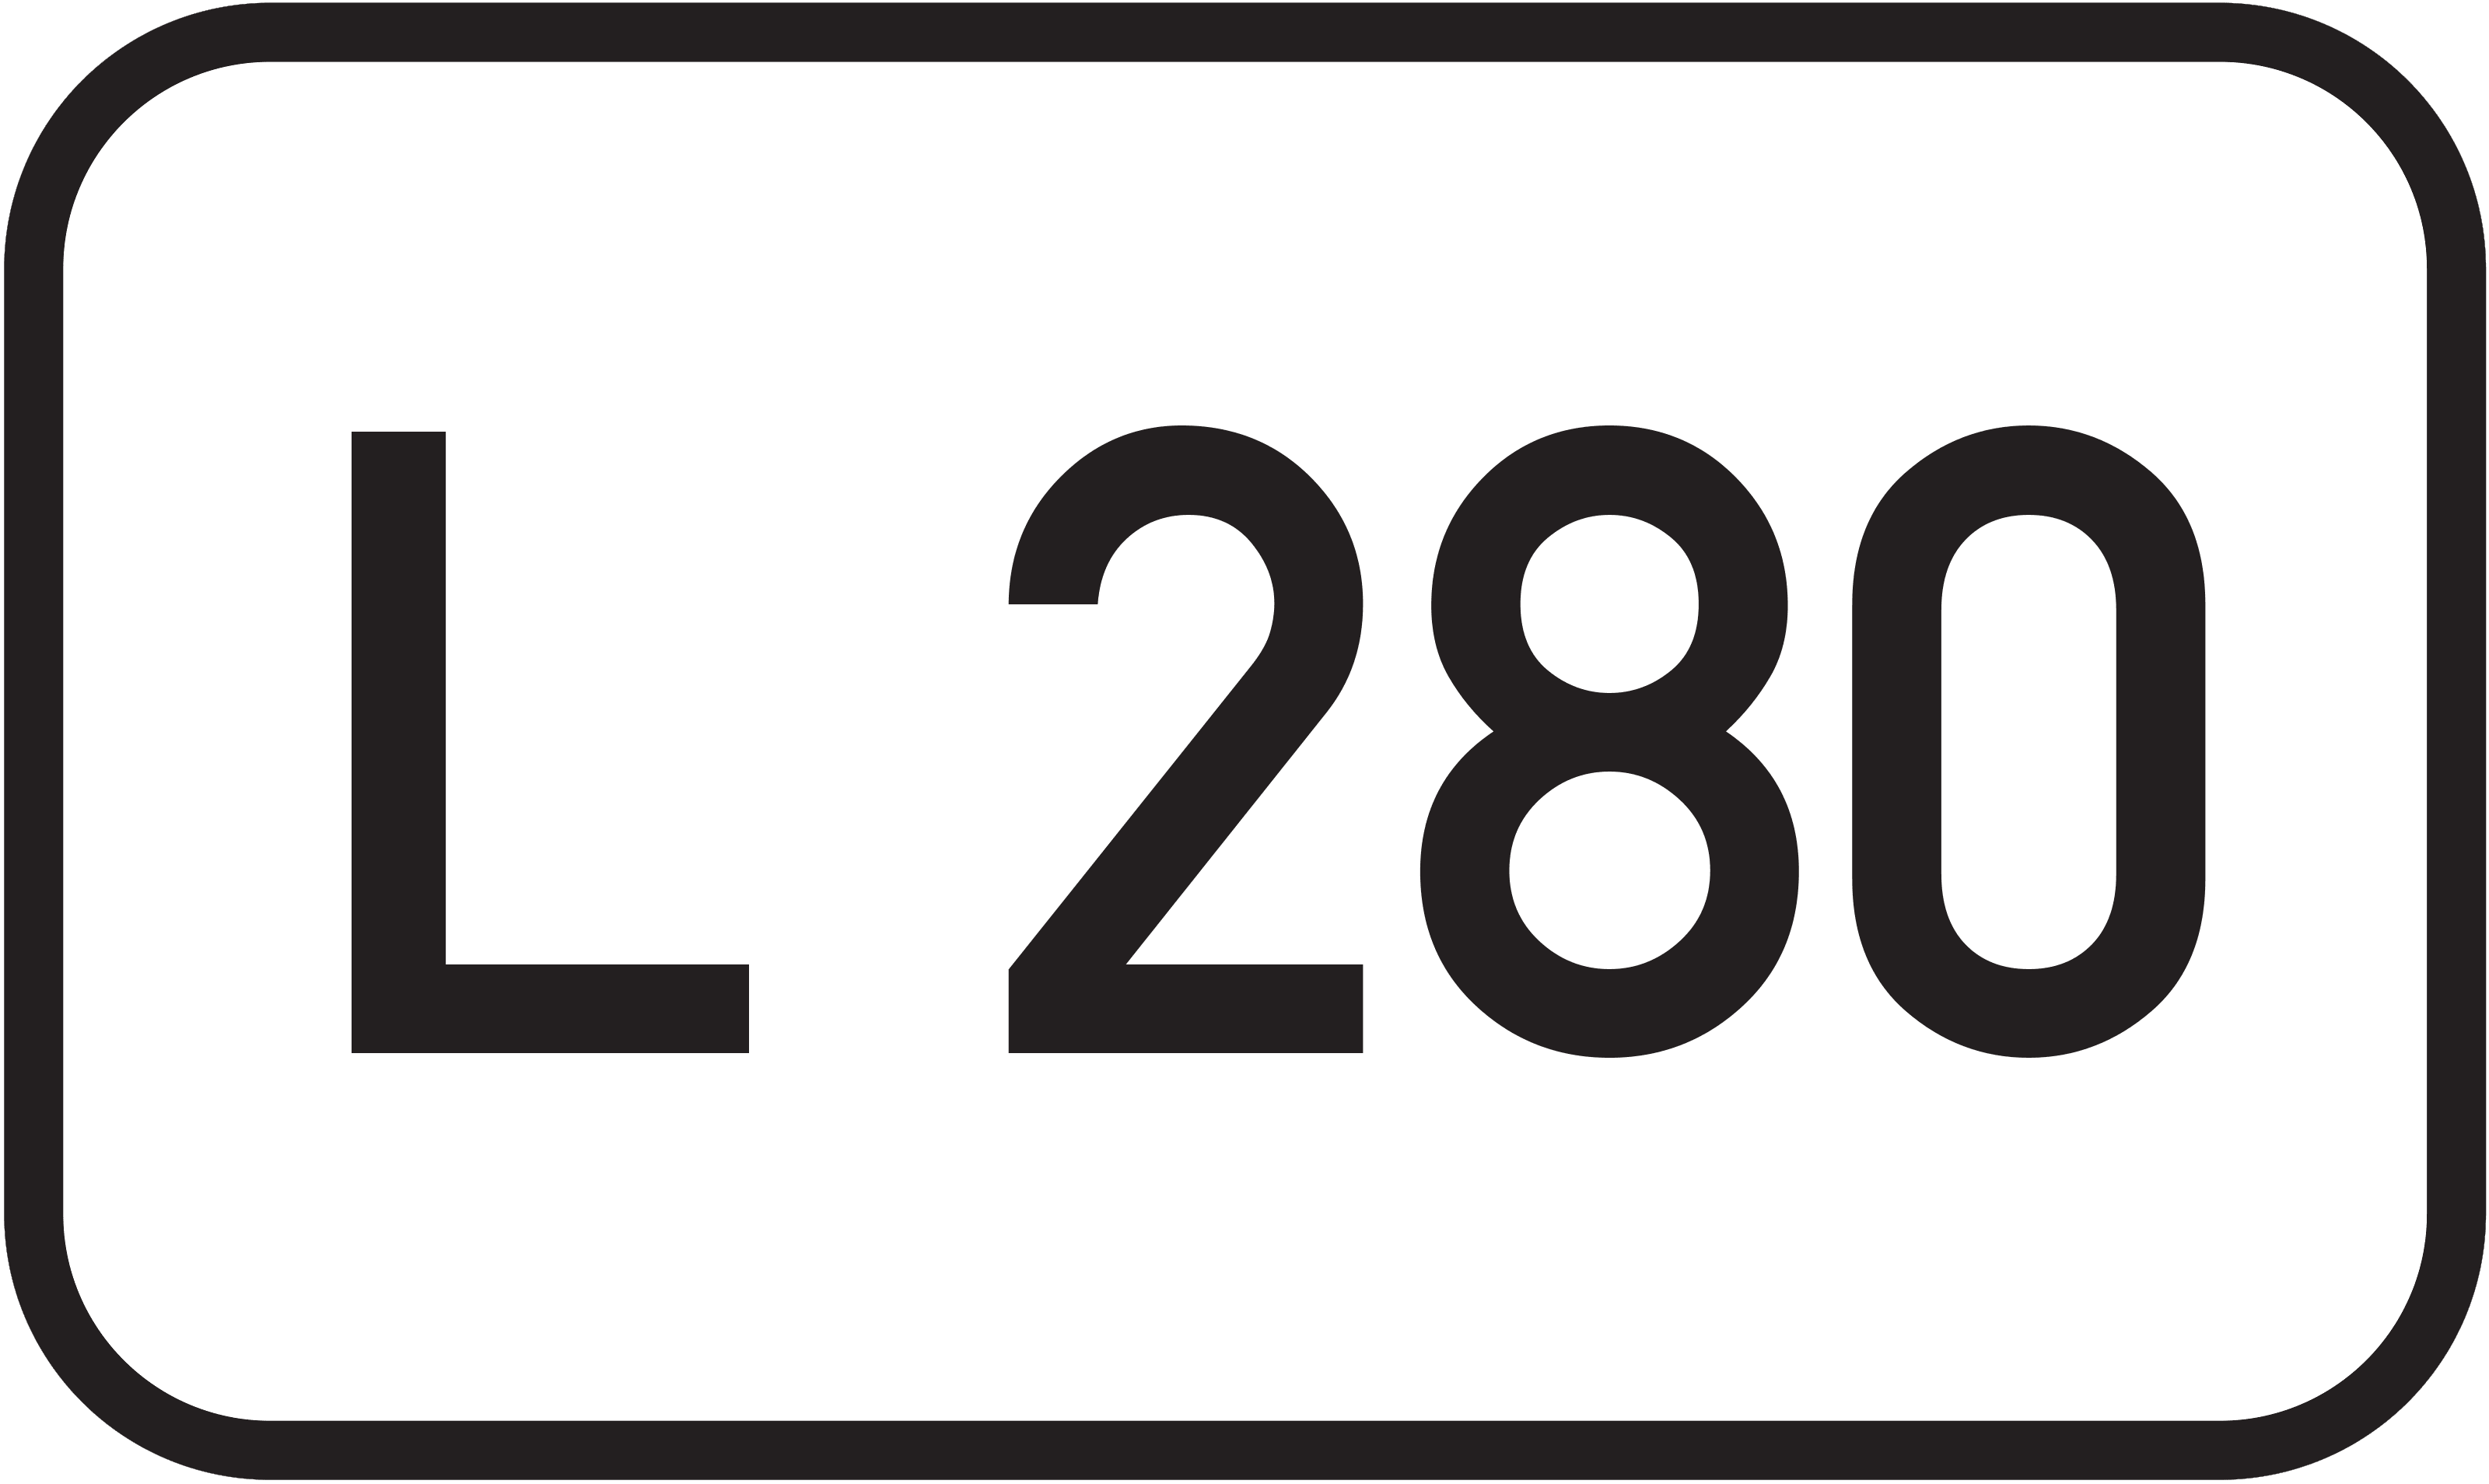 Landesstraße L 280